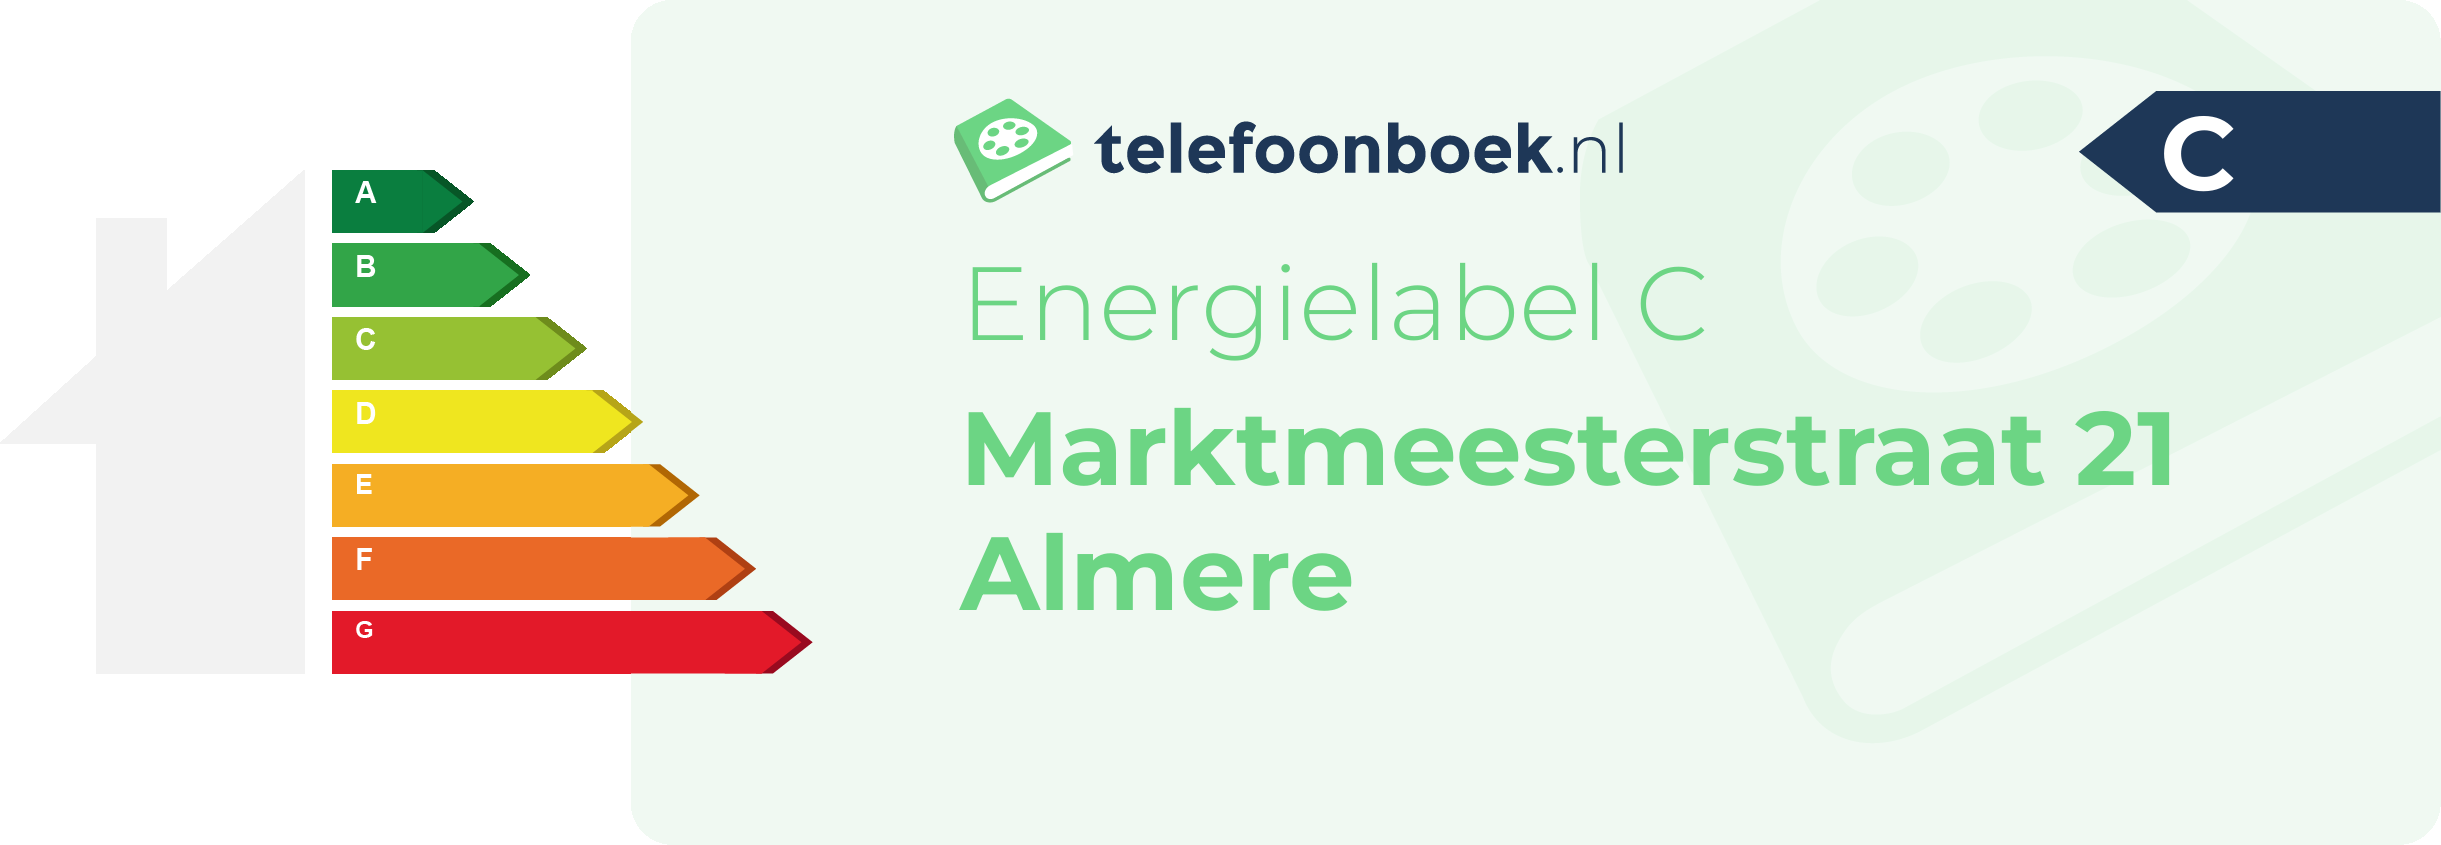 Energielabel Marktmeesterstraat 21 Almere